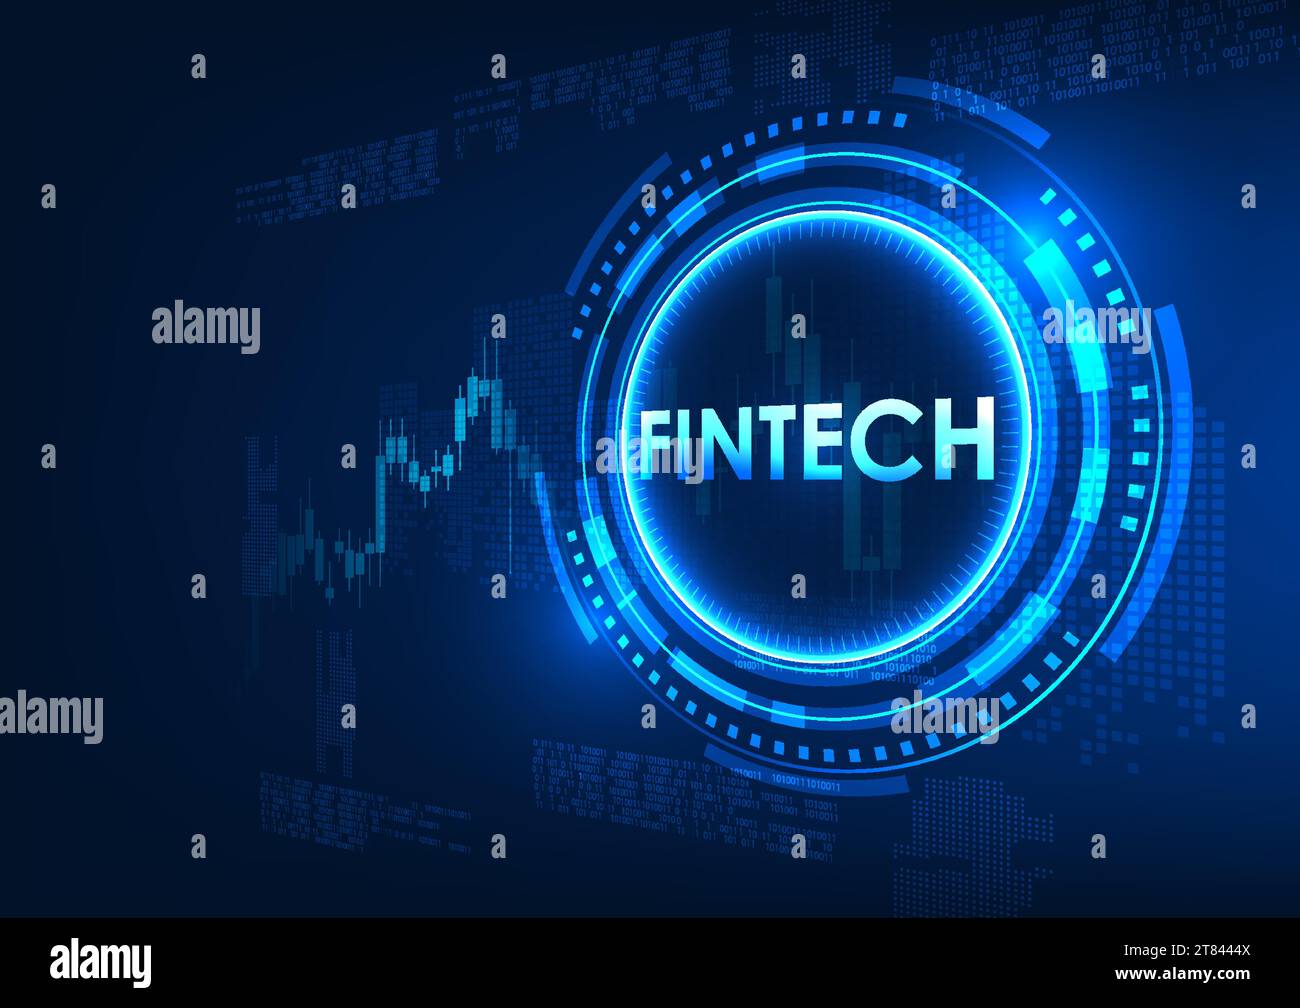 Technologie Fintech Fintech est à l'intérieur du cercle technologique, et derrière se trouve un graphique boursier. Montre les institutions financières qui ont utilisé la technologie pour mak Illustration de Vecteur